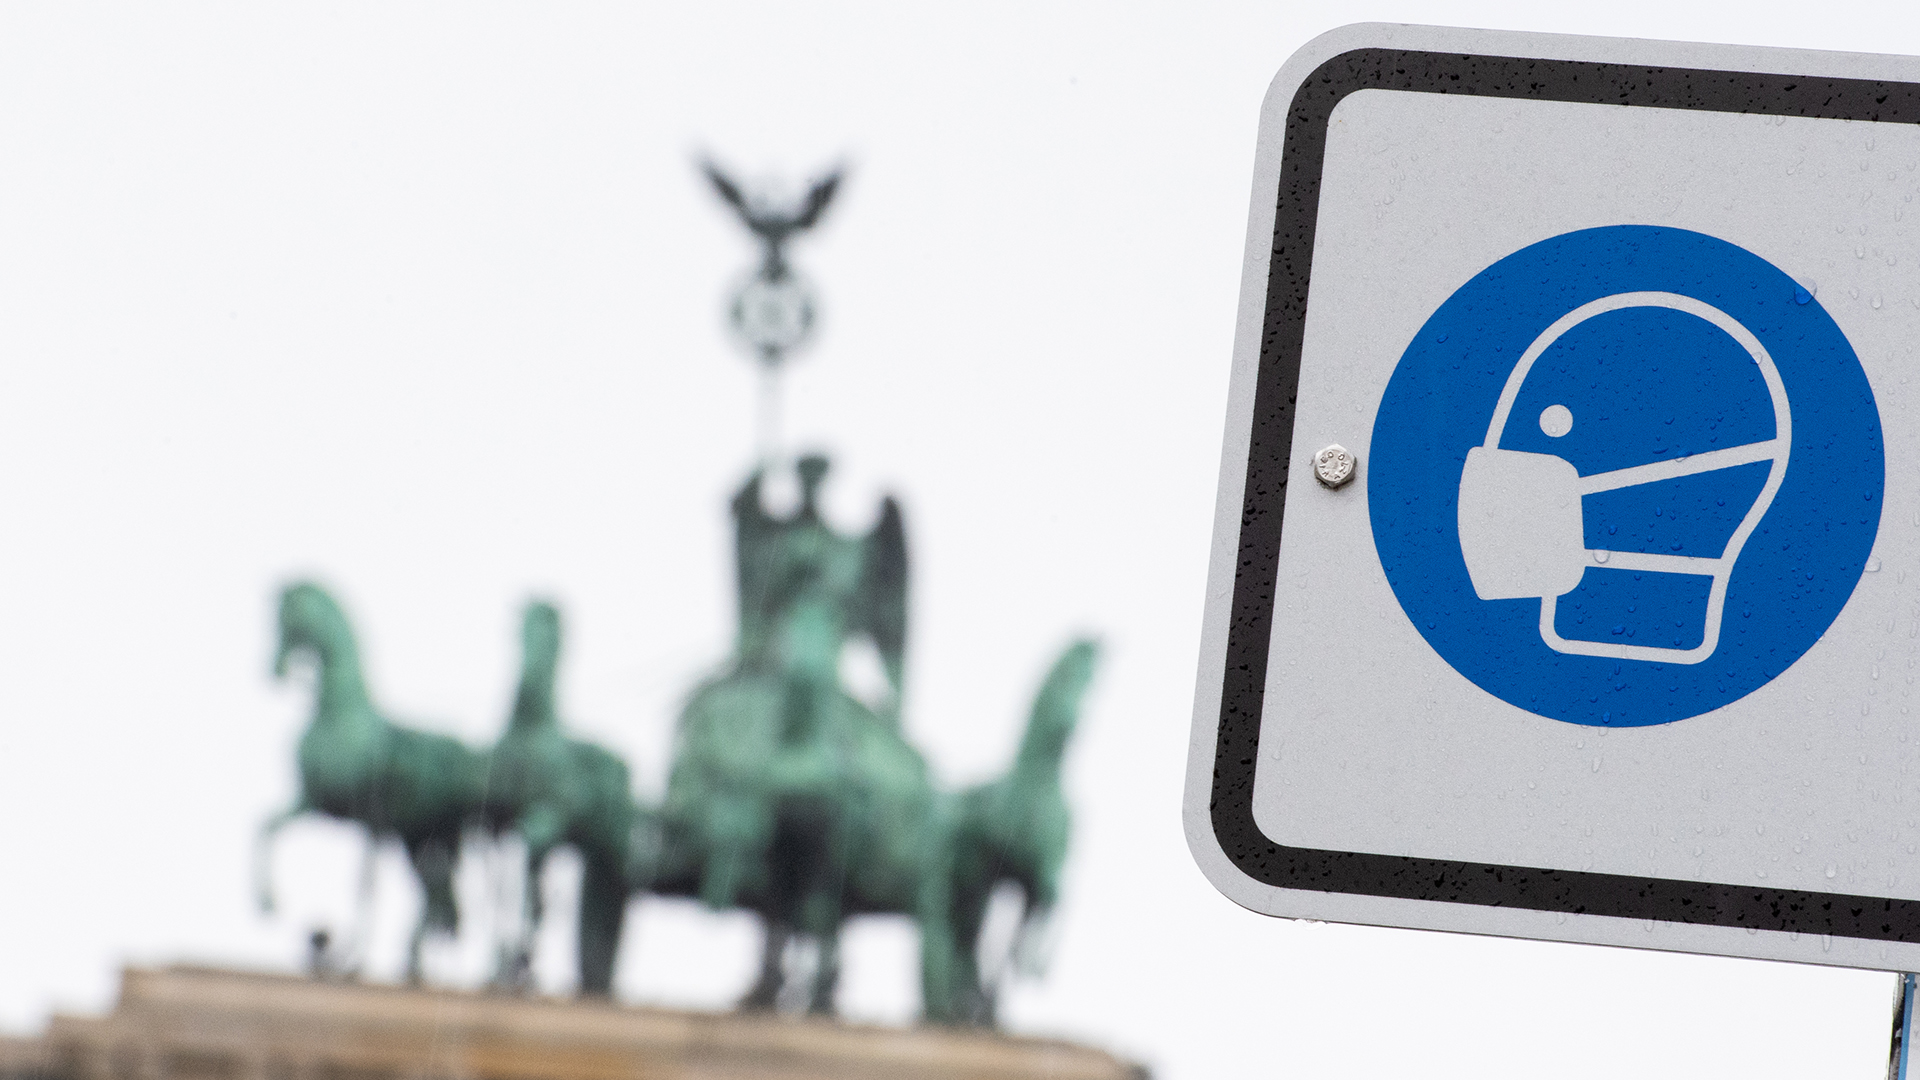 Am Pariser Platz vor dem Brandenburger Tor weist ein Hinweisschild auf die Maskenpflicht hin. (Archivbild)